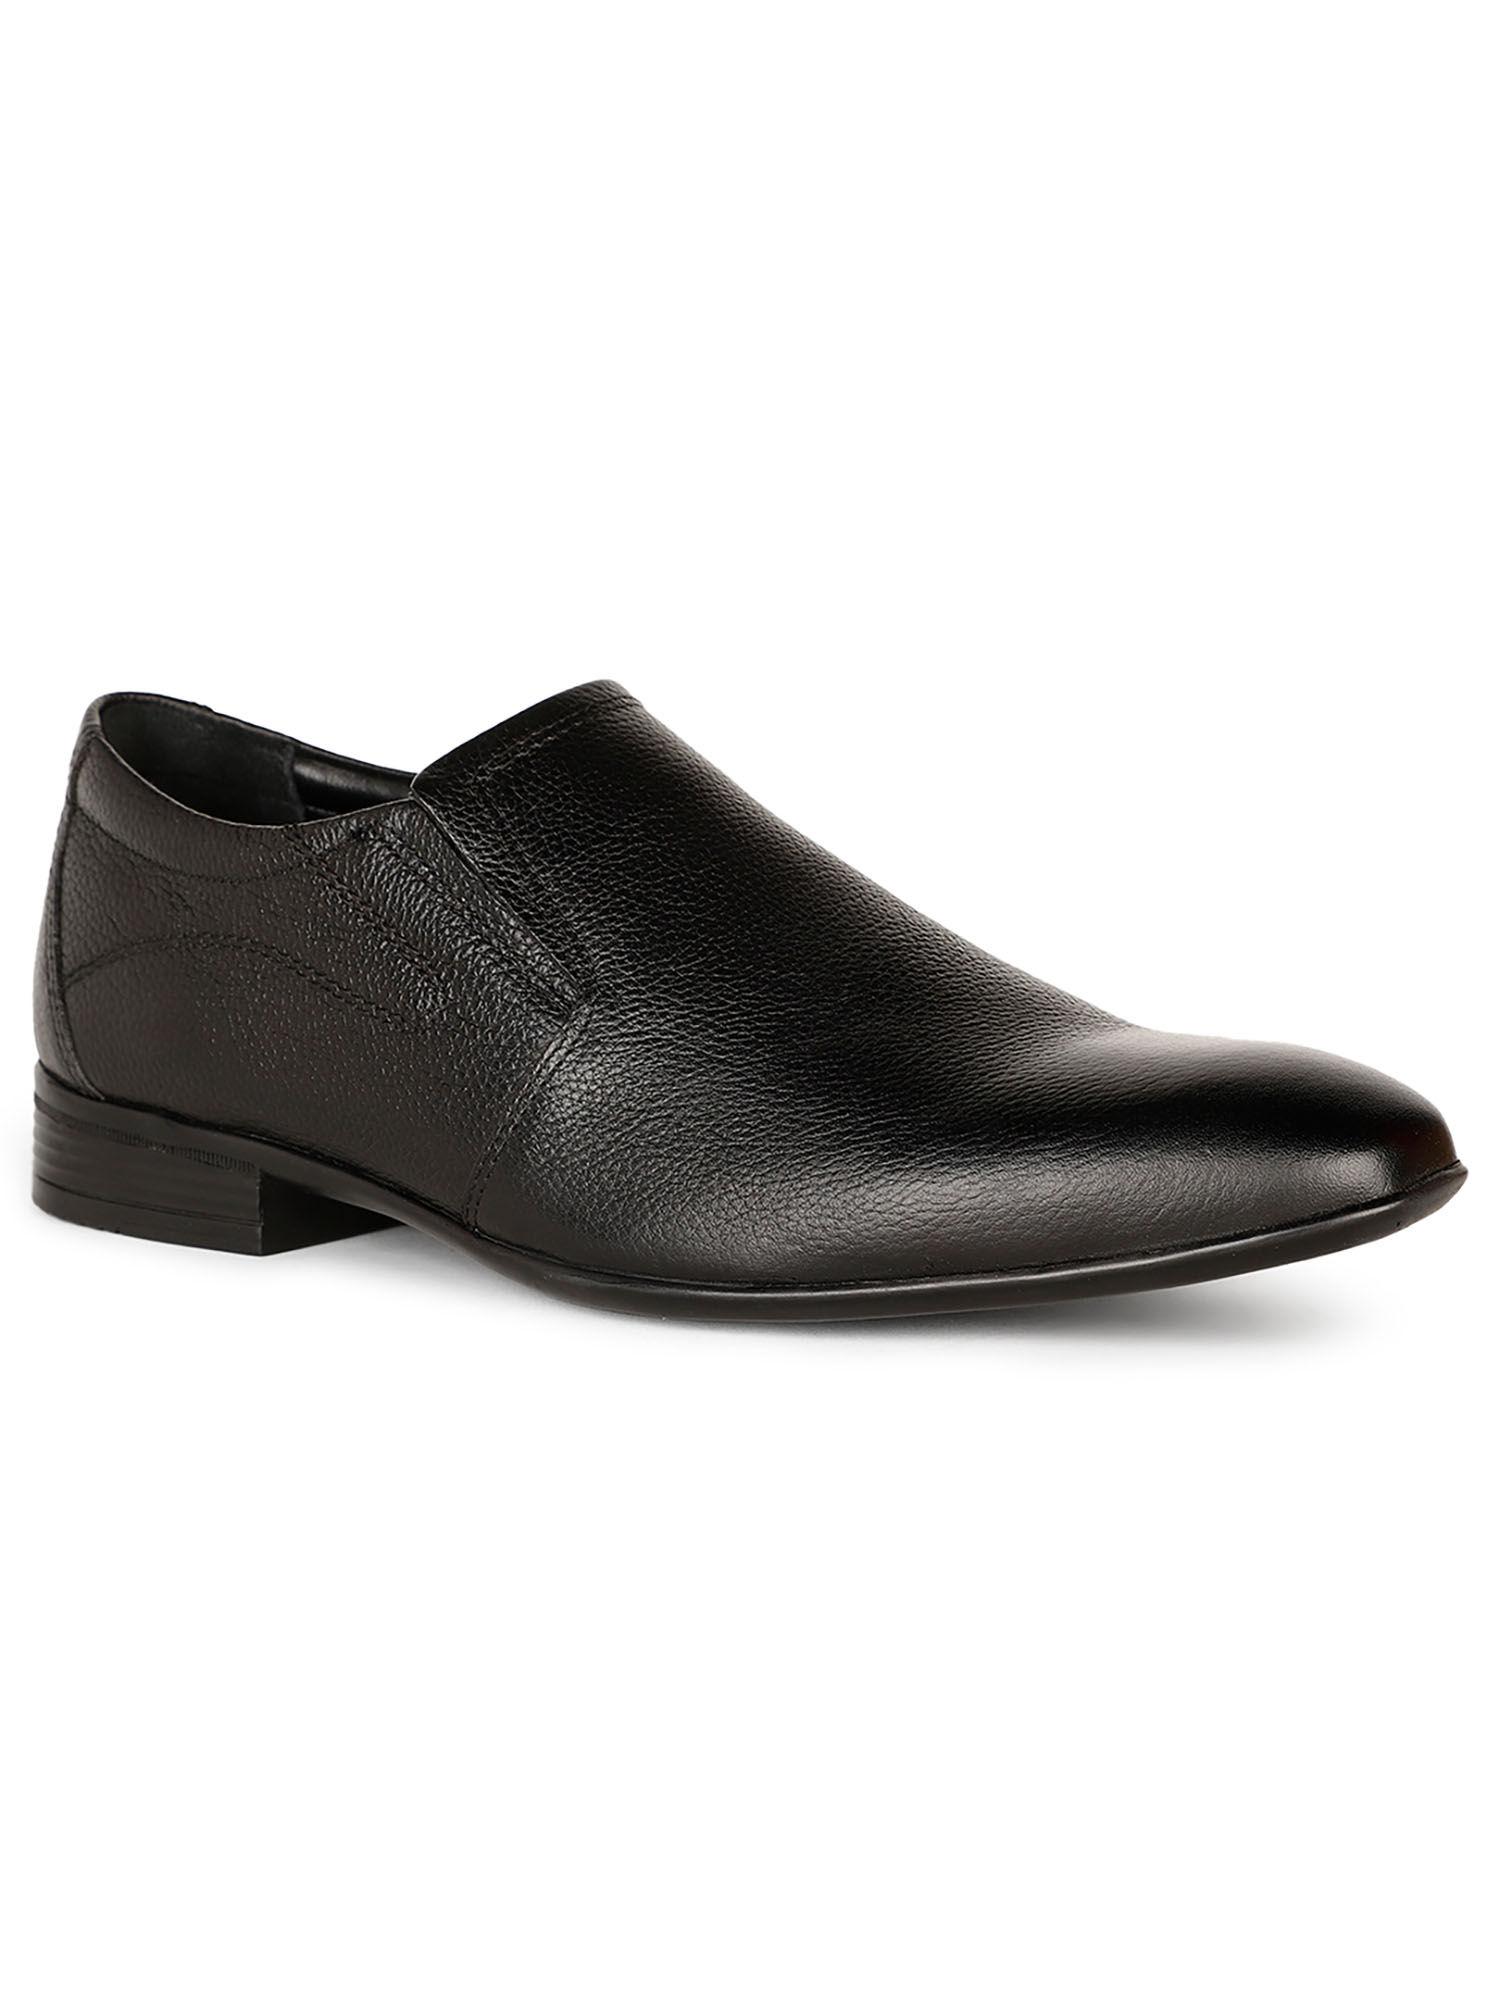 men black slip on formal shoes